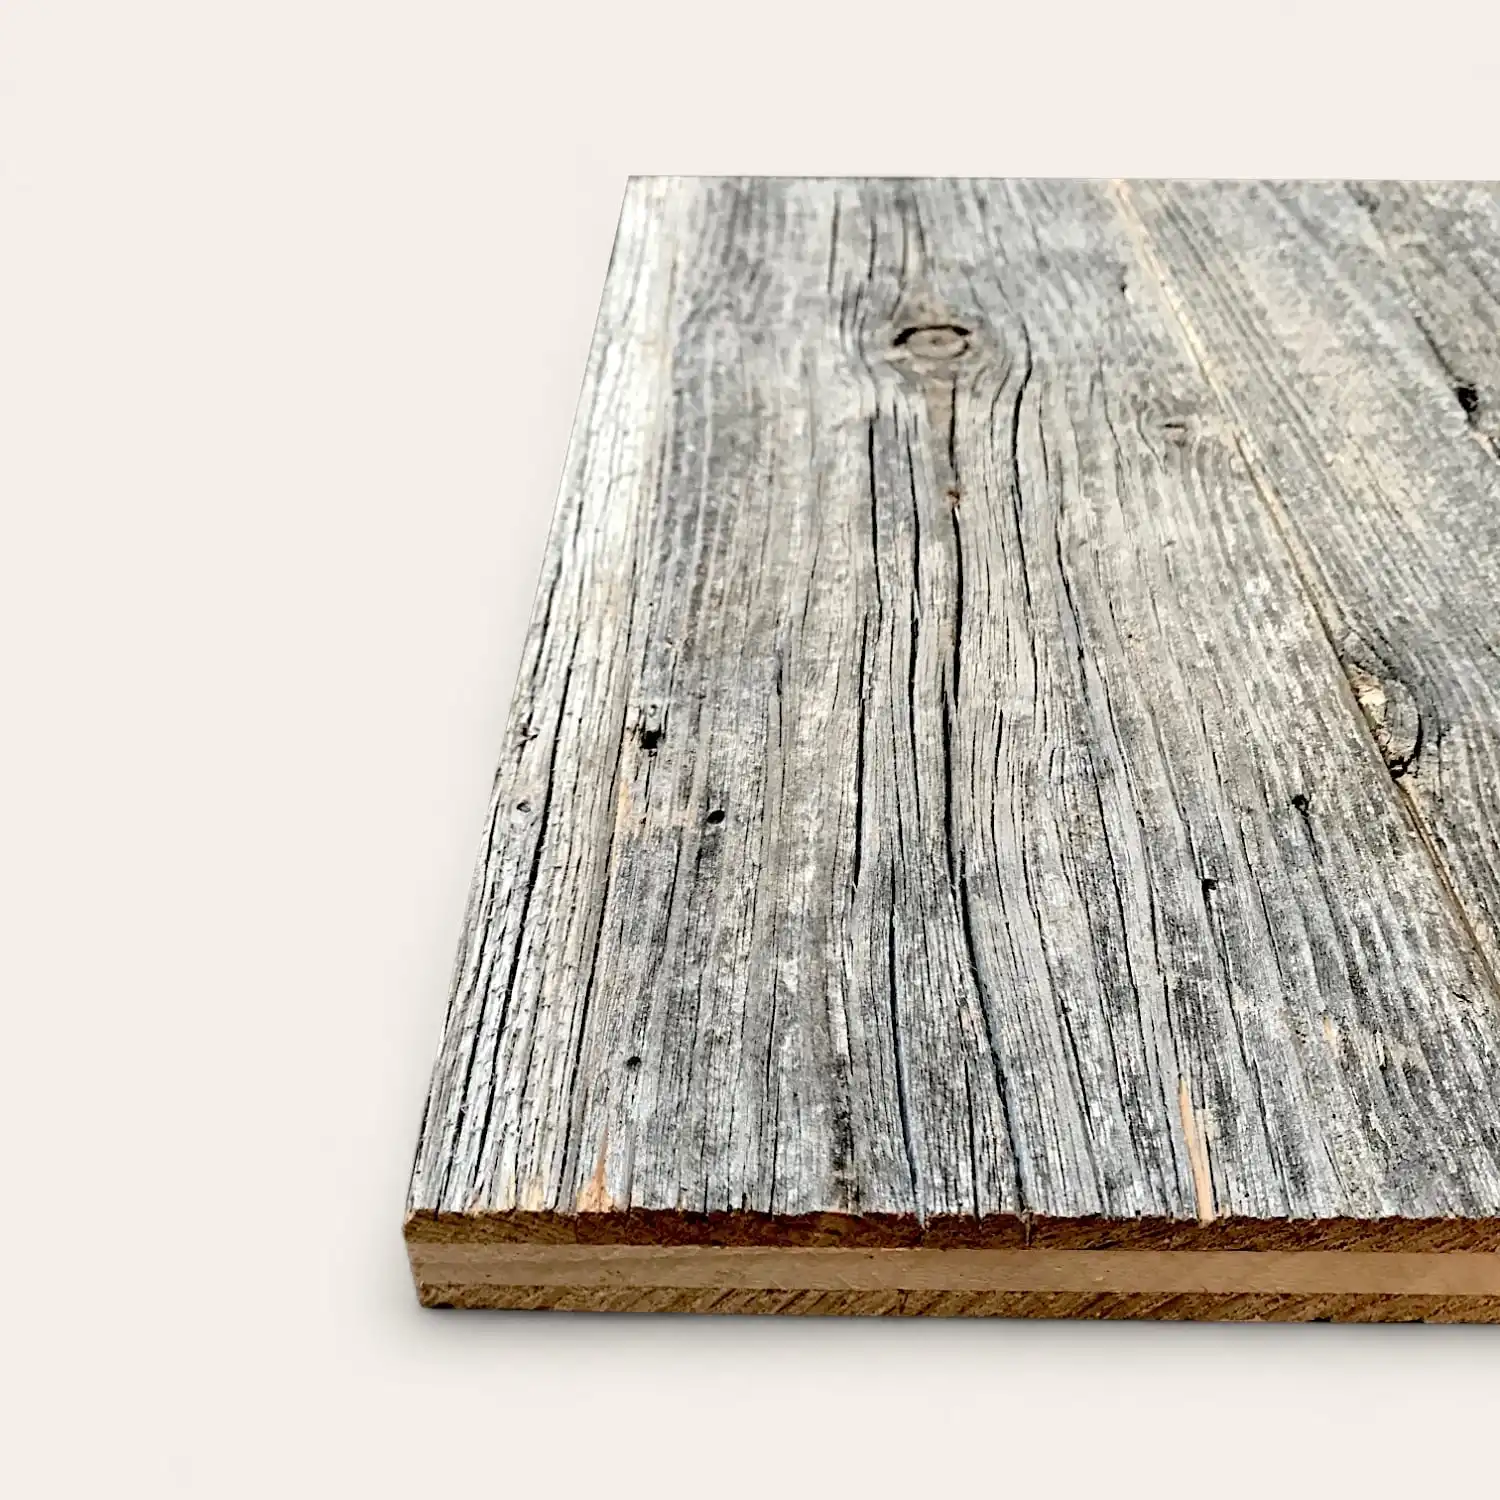  Vue latérale d'une planche de bois avec une surface grise texturée et patinée sur un fond blanc uni. 